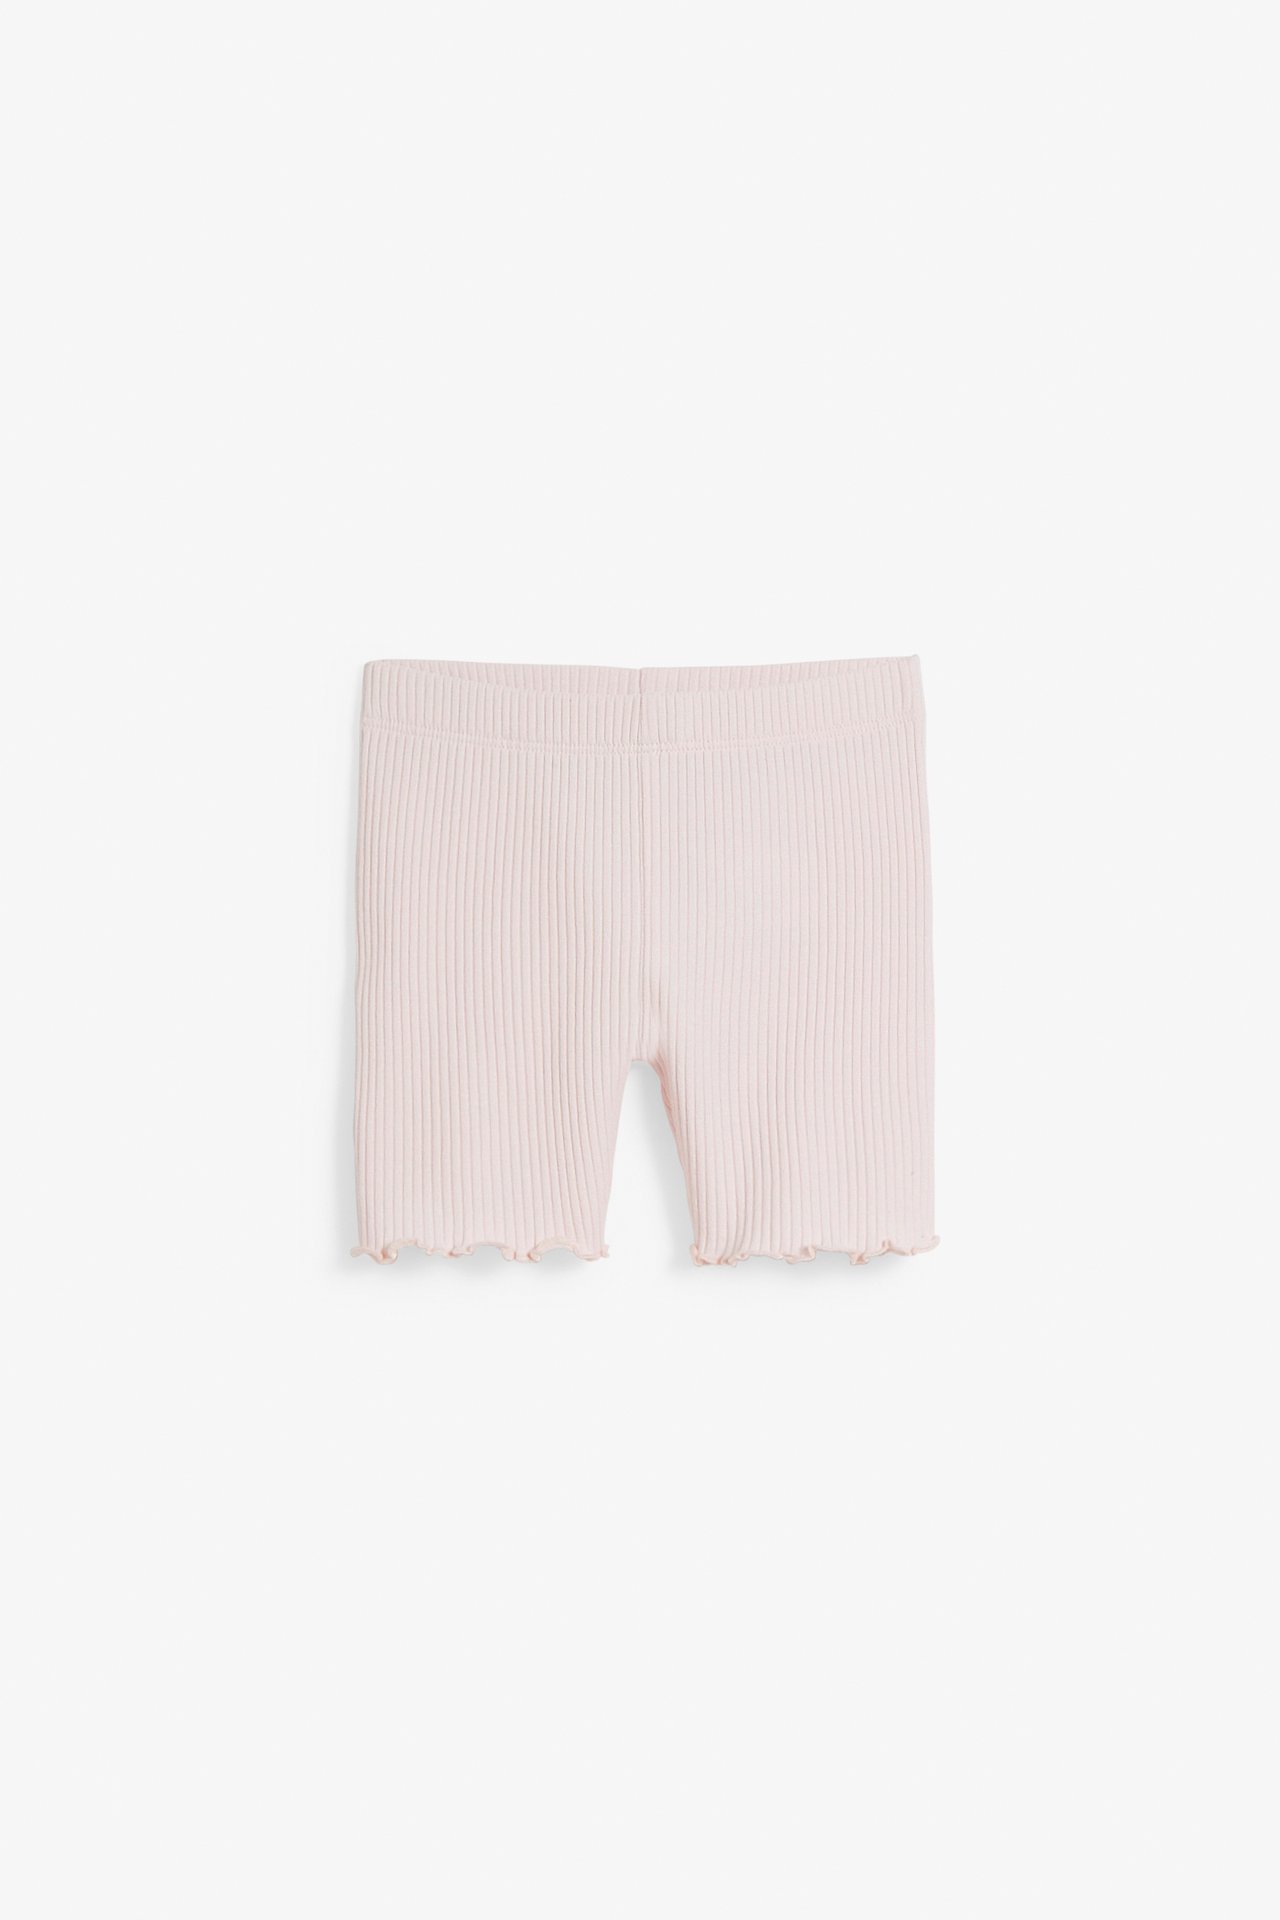 Ribbestrikket shorts baby - Rosa - 5